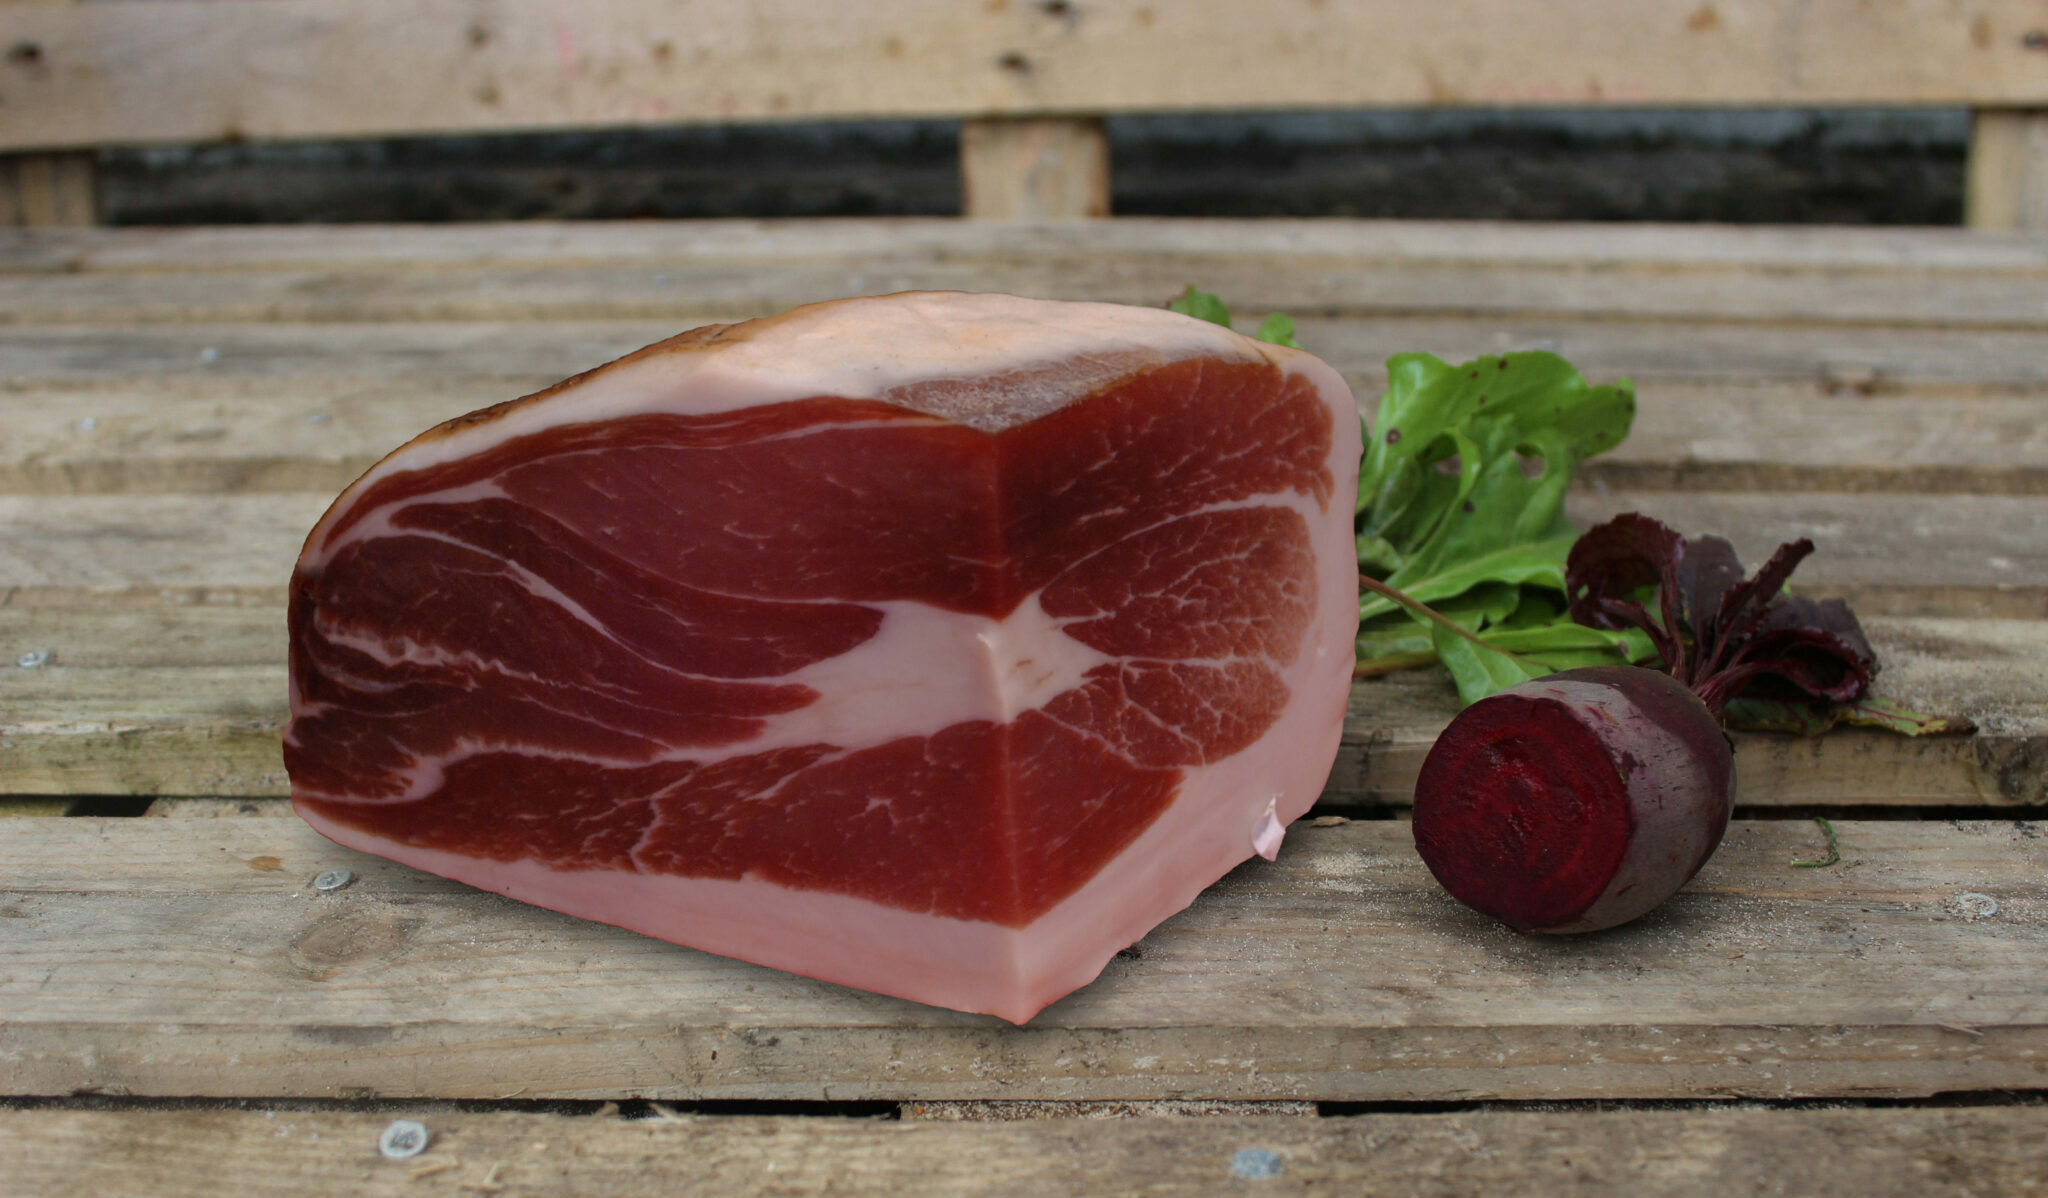 Rödbeta och skinka - rödbetsextrakt kan förlänga hållbarheten hos kött- och charkprodukter